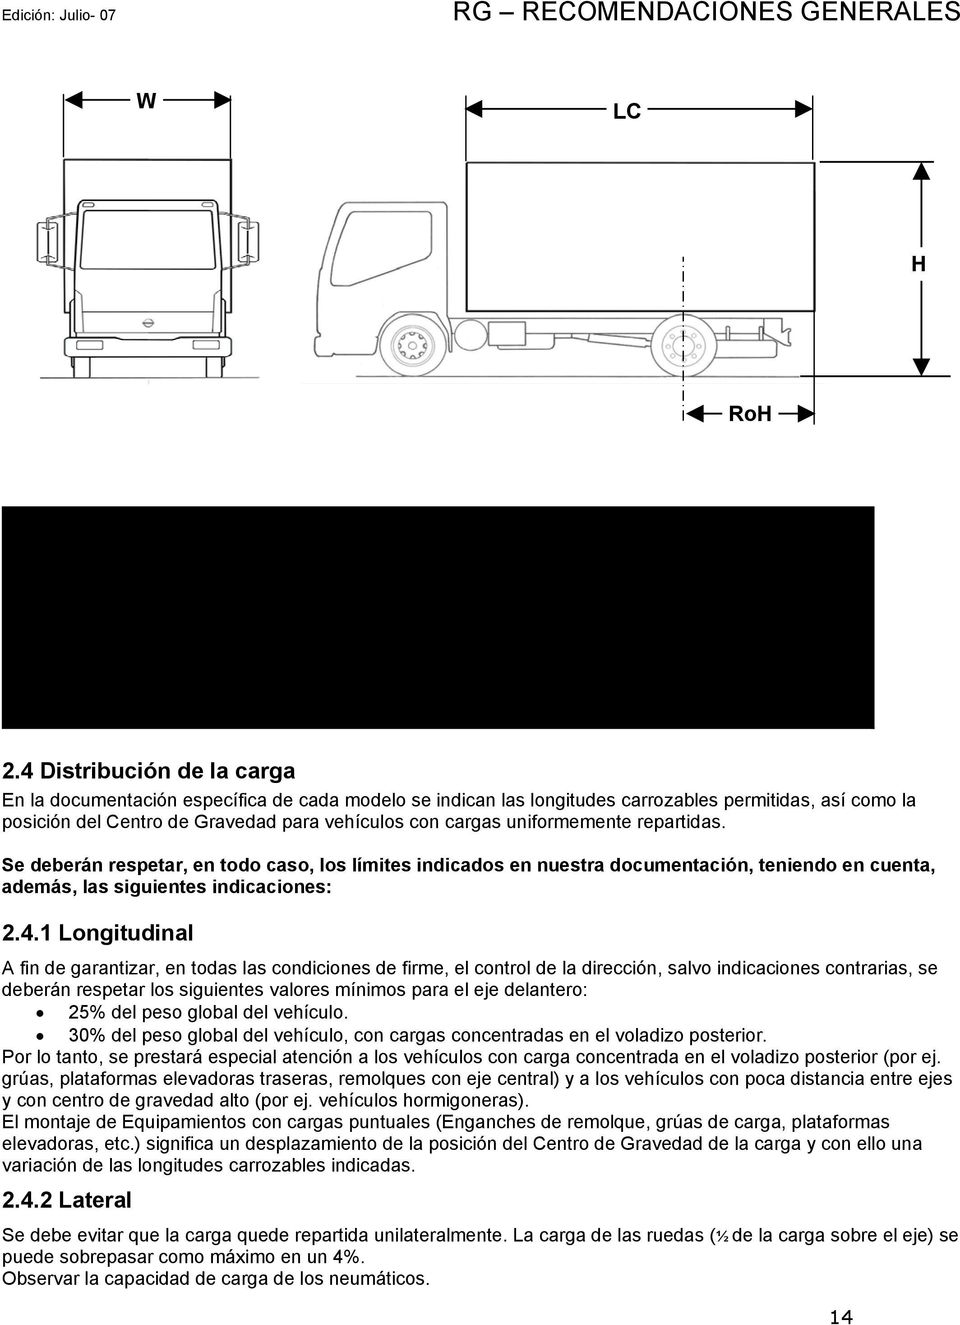 4 Distribución de la carga En la documentación específica de cada modelo se indican las longitudes carrozables permitidas, así como la posición del Centro de Gravedad para vehículos con cargas